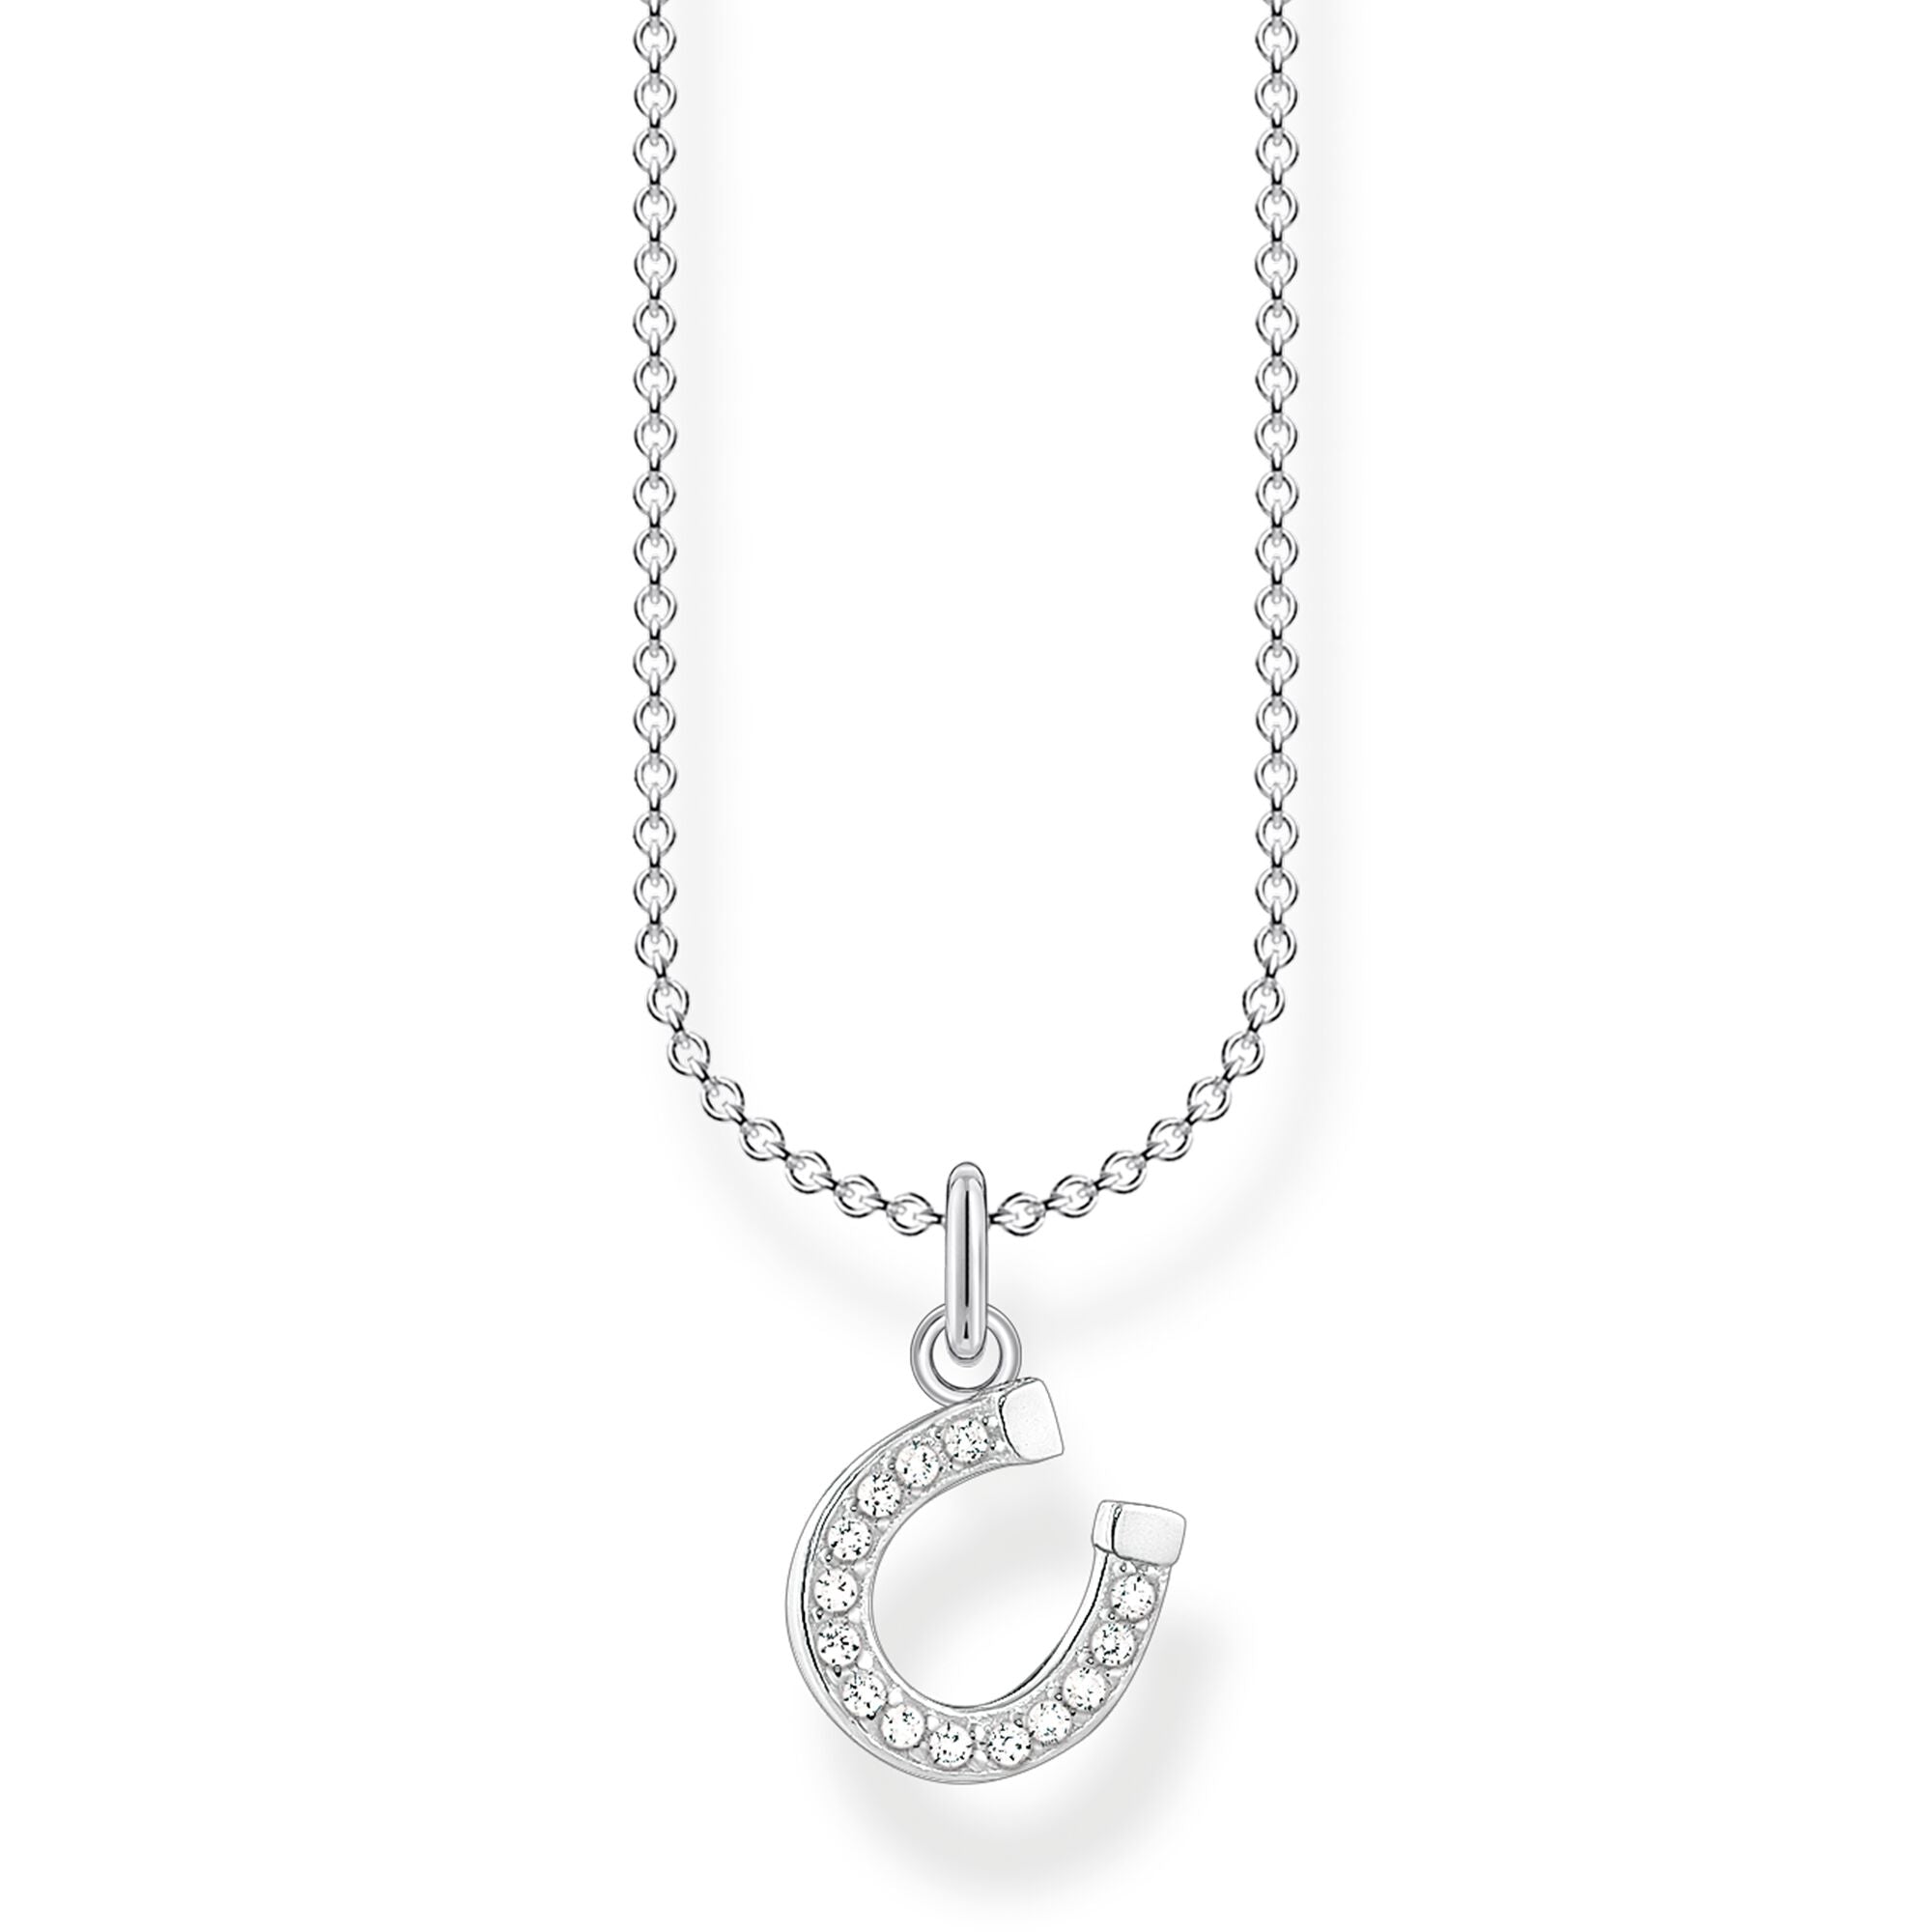 Horseshoe Necklace - Silver